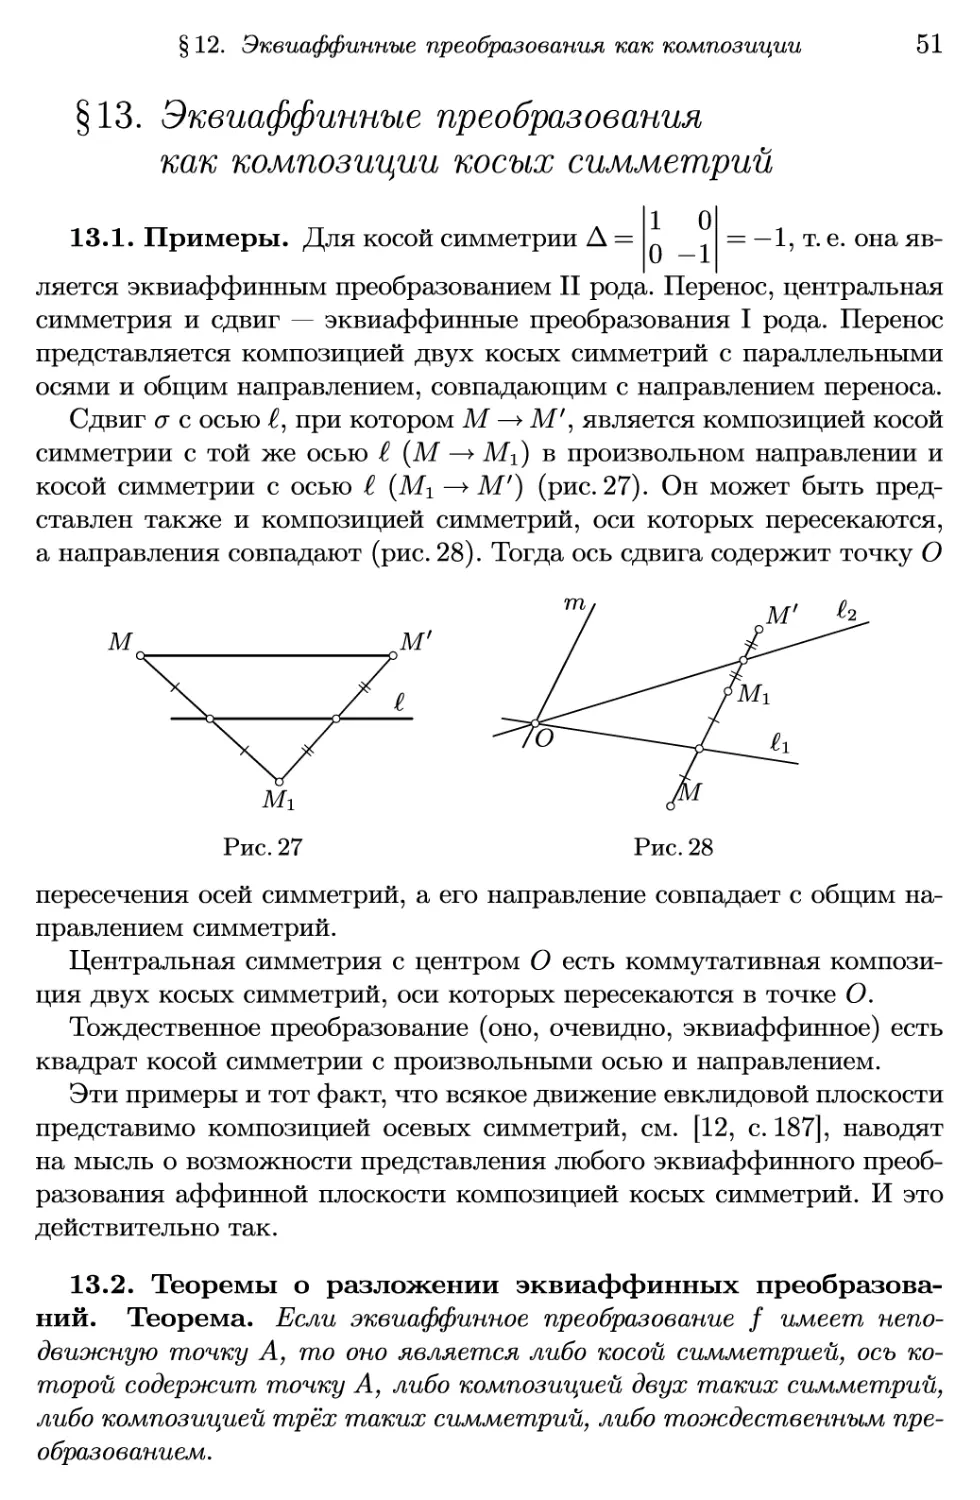 §13. Эквиаффинные преобразования как композиции косых симметрии